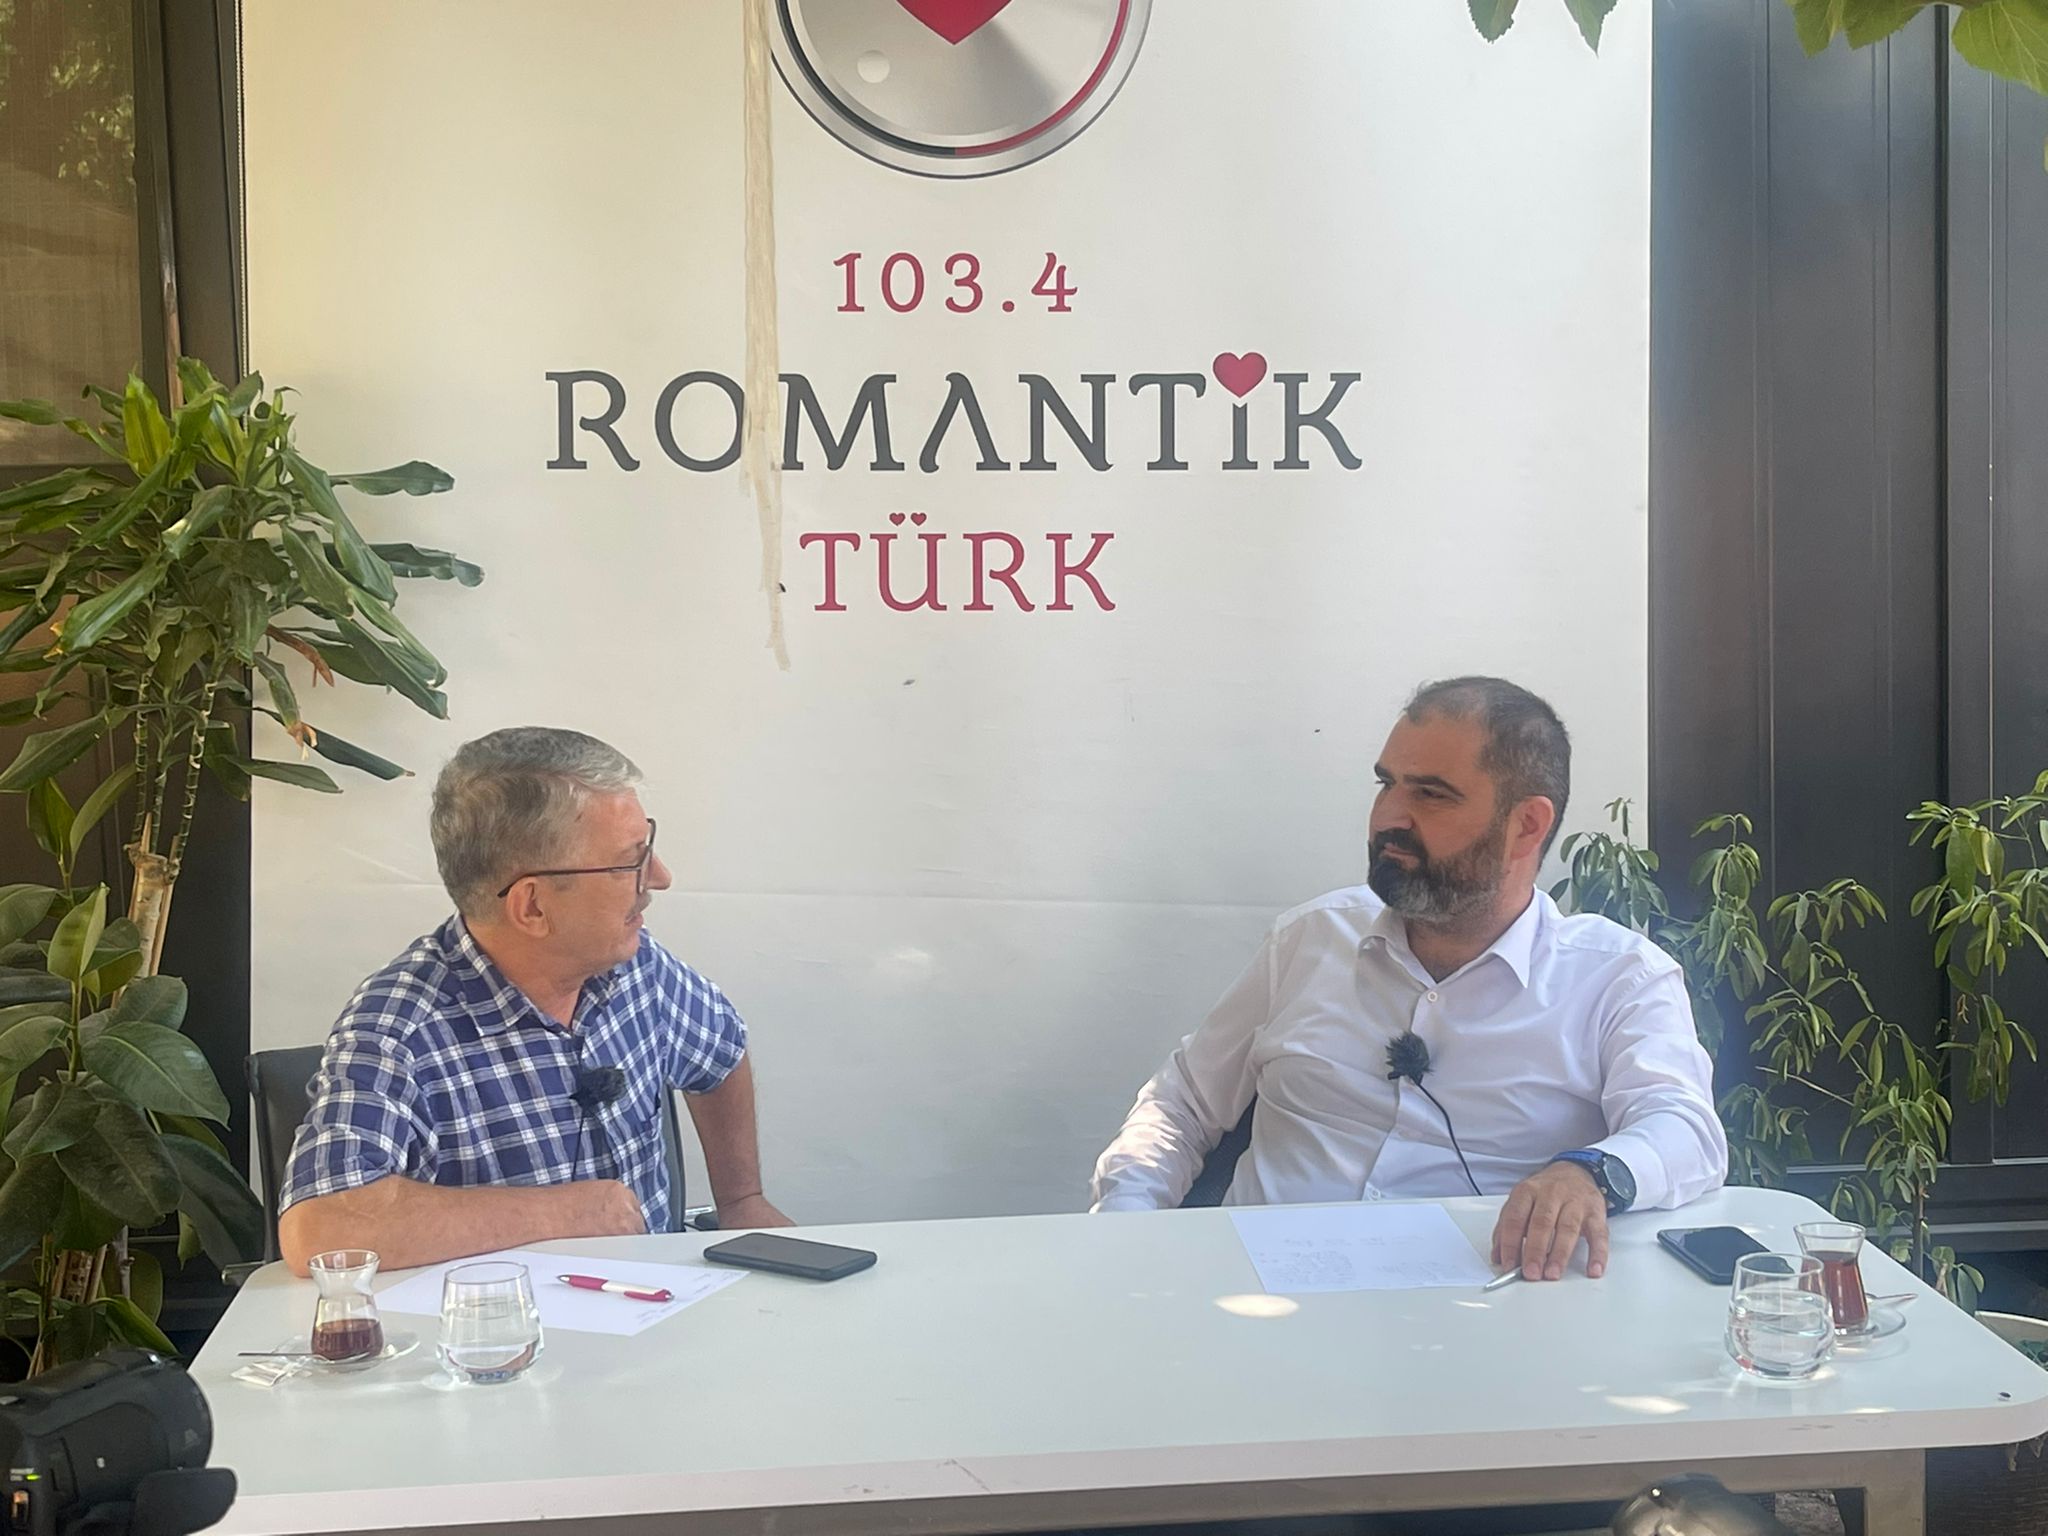 Erkan Çoruk TÜMSİAD İzmir Şube Başkanı Erkan Çoruk, Radyo Romantik Türk’te Gazeteci Necati Bahçeci’nin konuğu oldu. Bahçeci’nin sorularını yanıtlayan Çoruk, gündem ve ekonomi ile ilgili açıklamalarda bulundu.